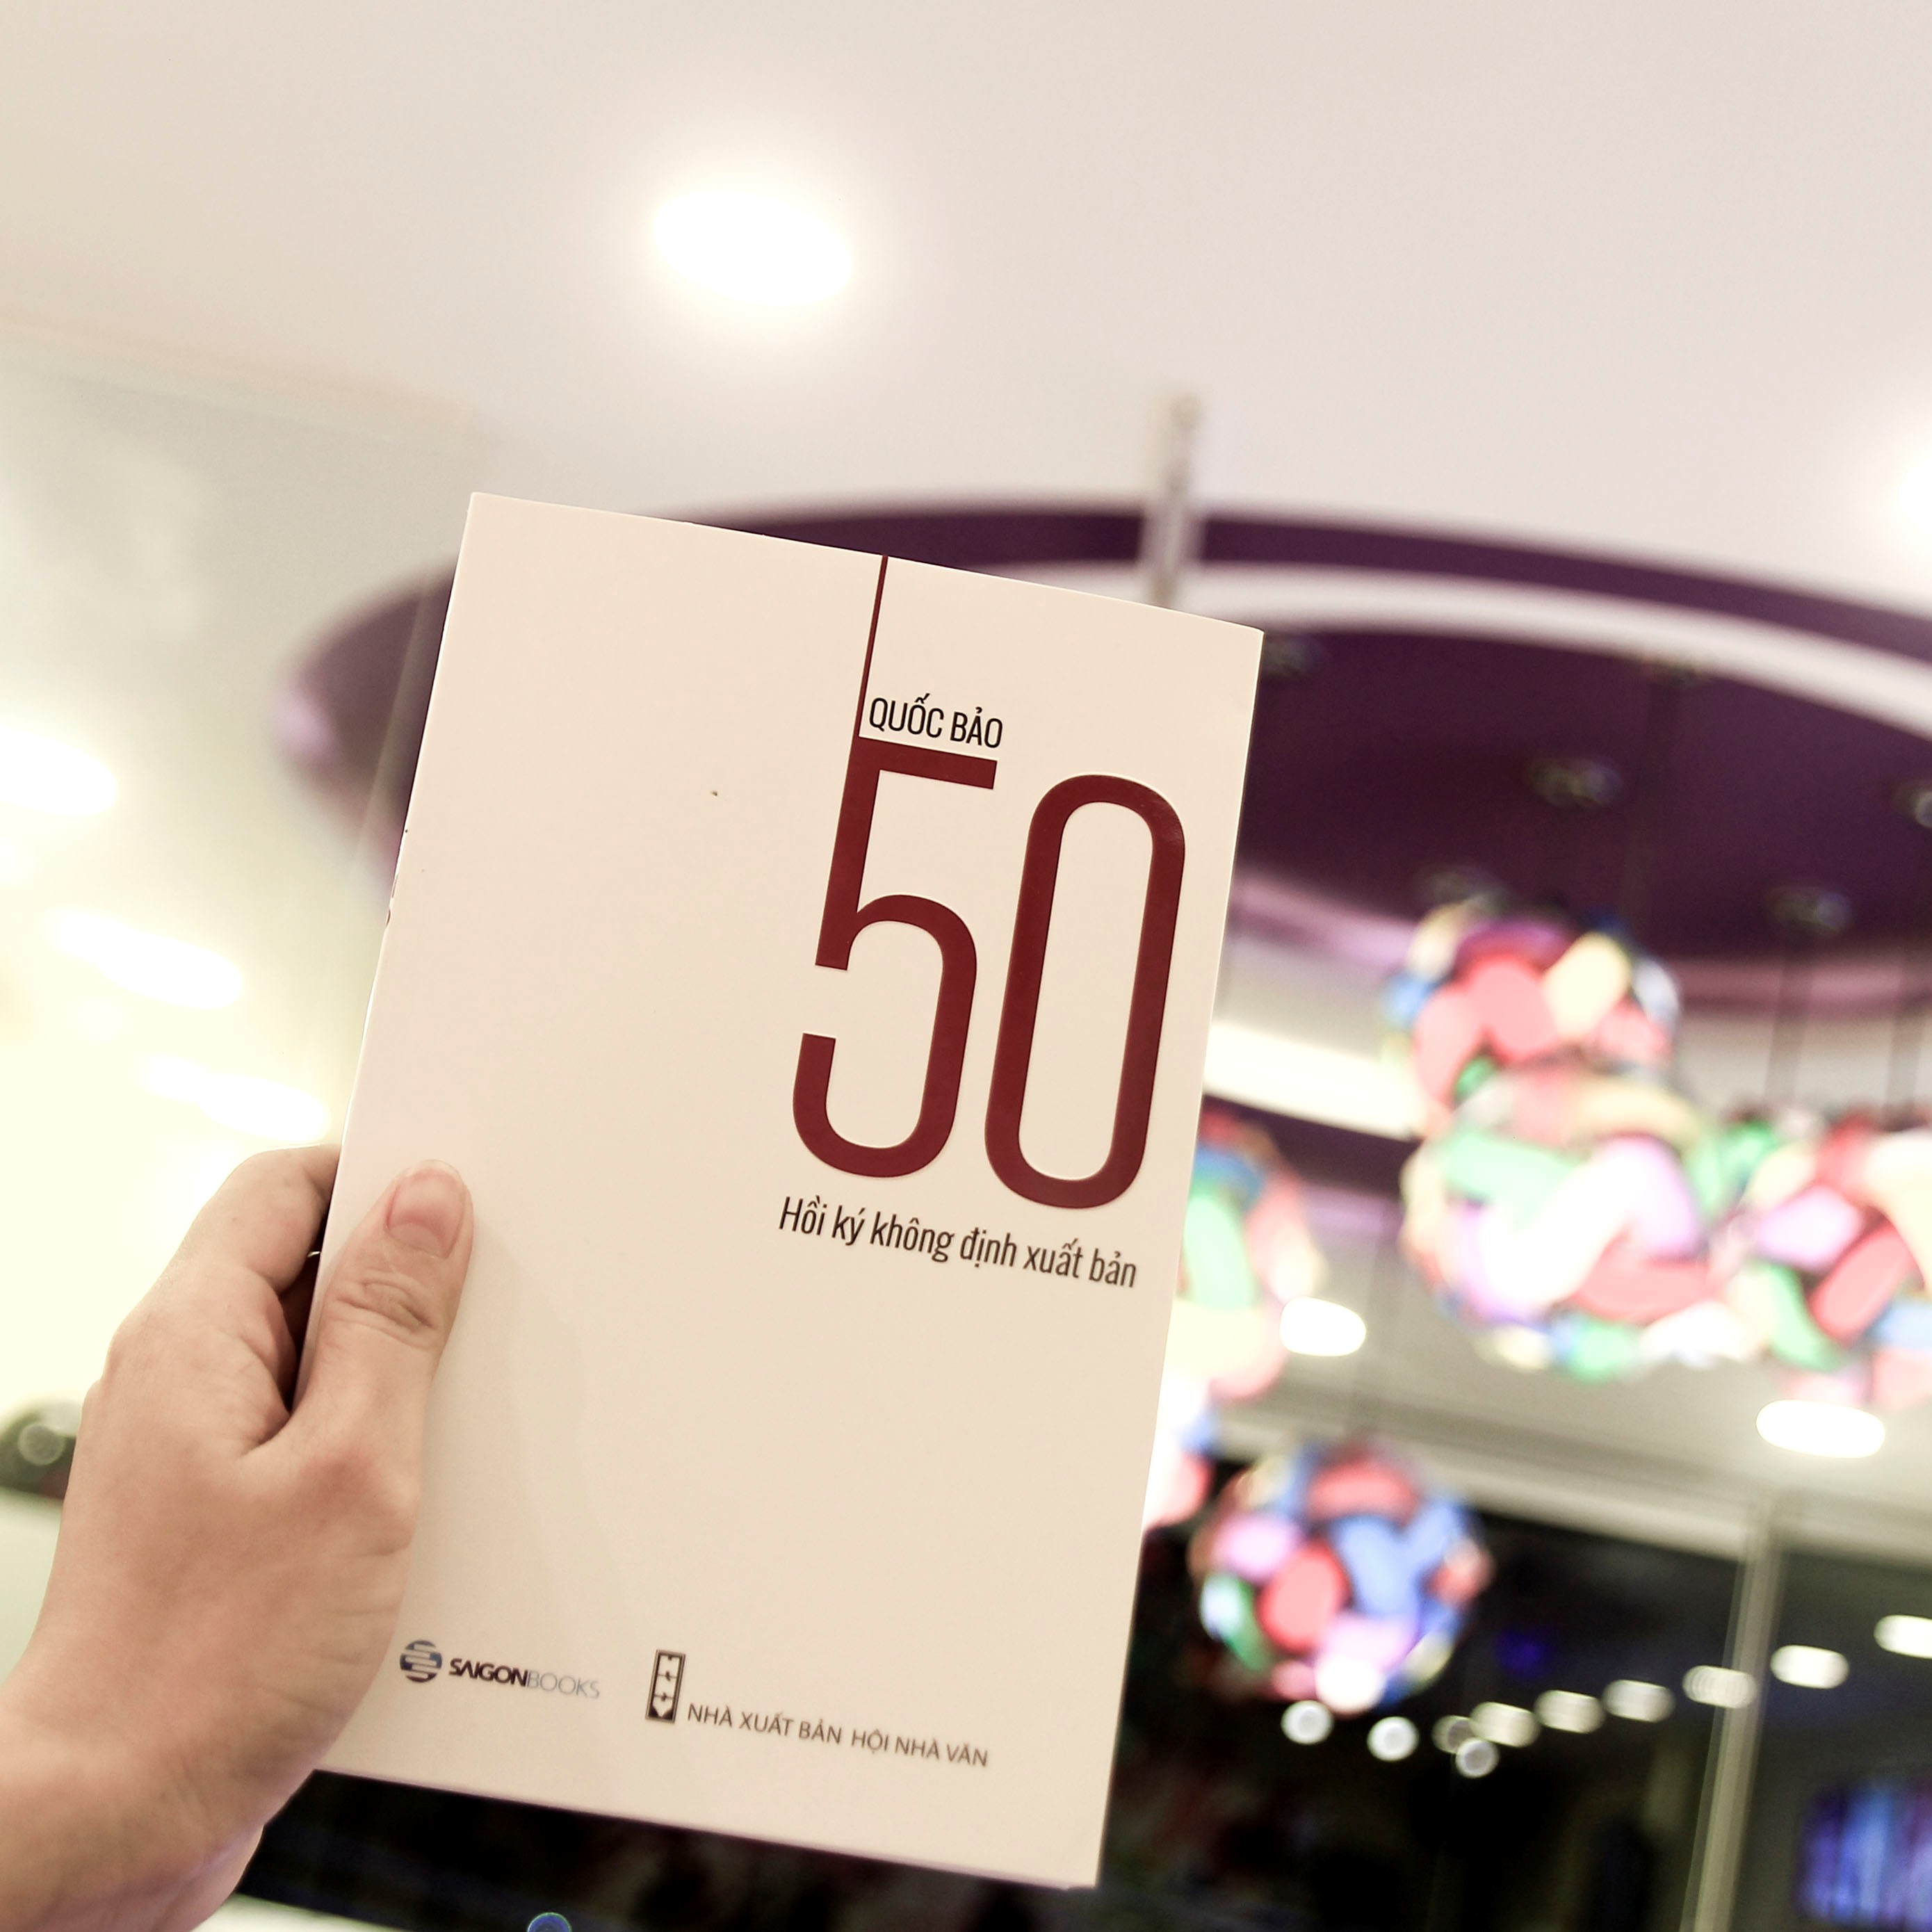 50 Hồi ký không định xuất bản - Tác giả: Quốc Bảo